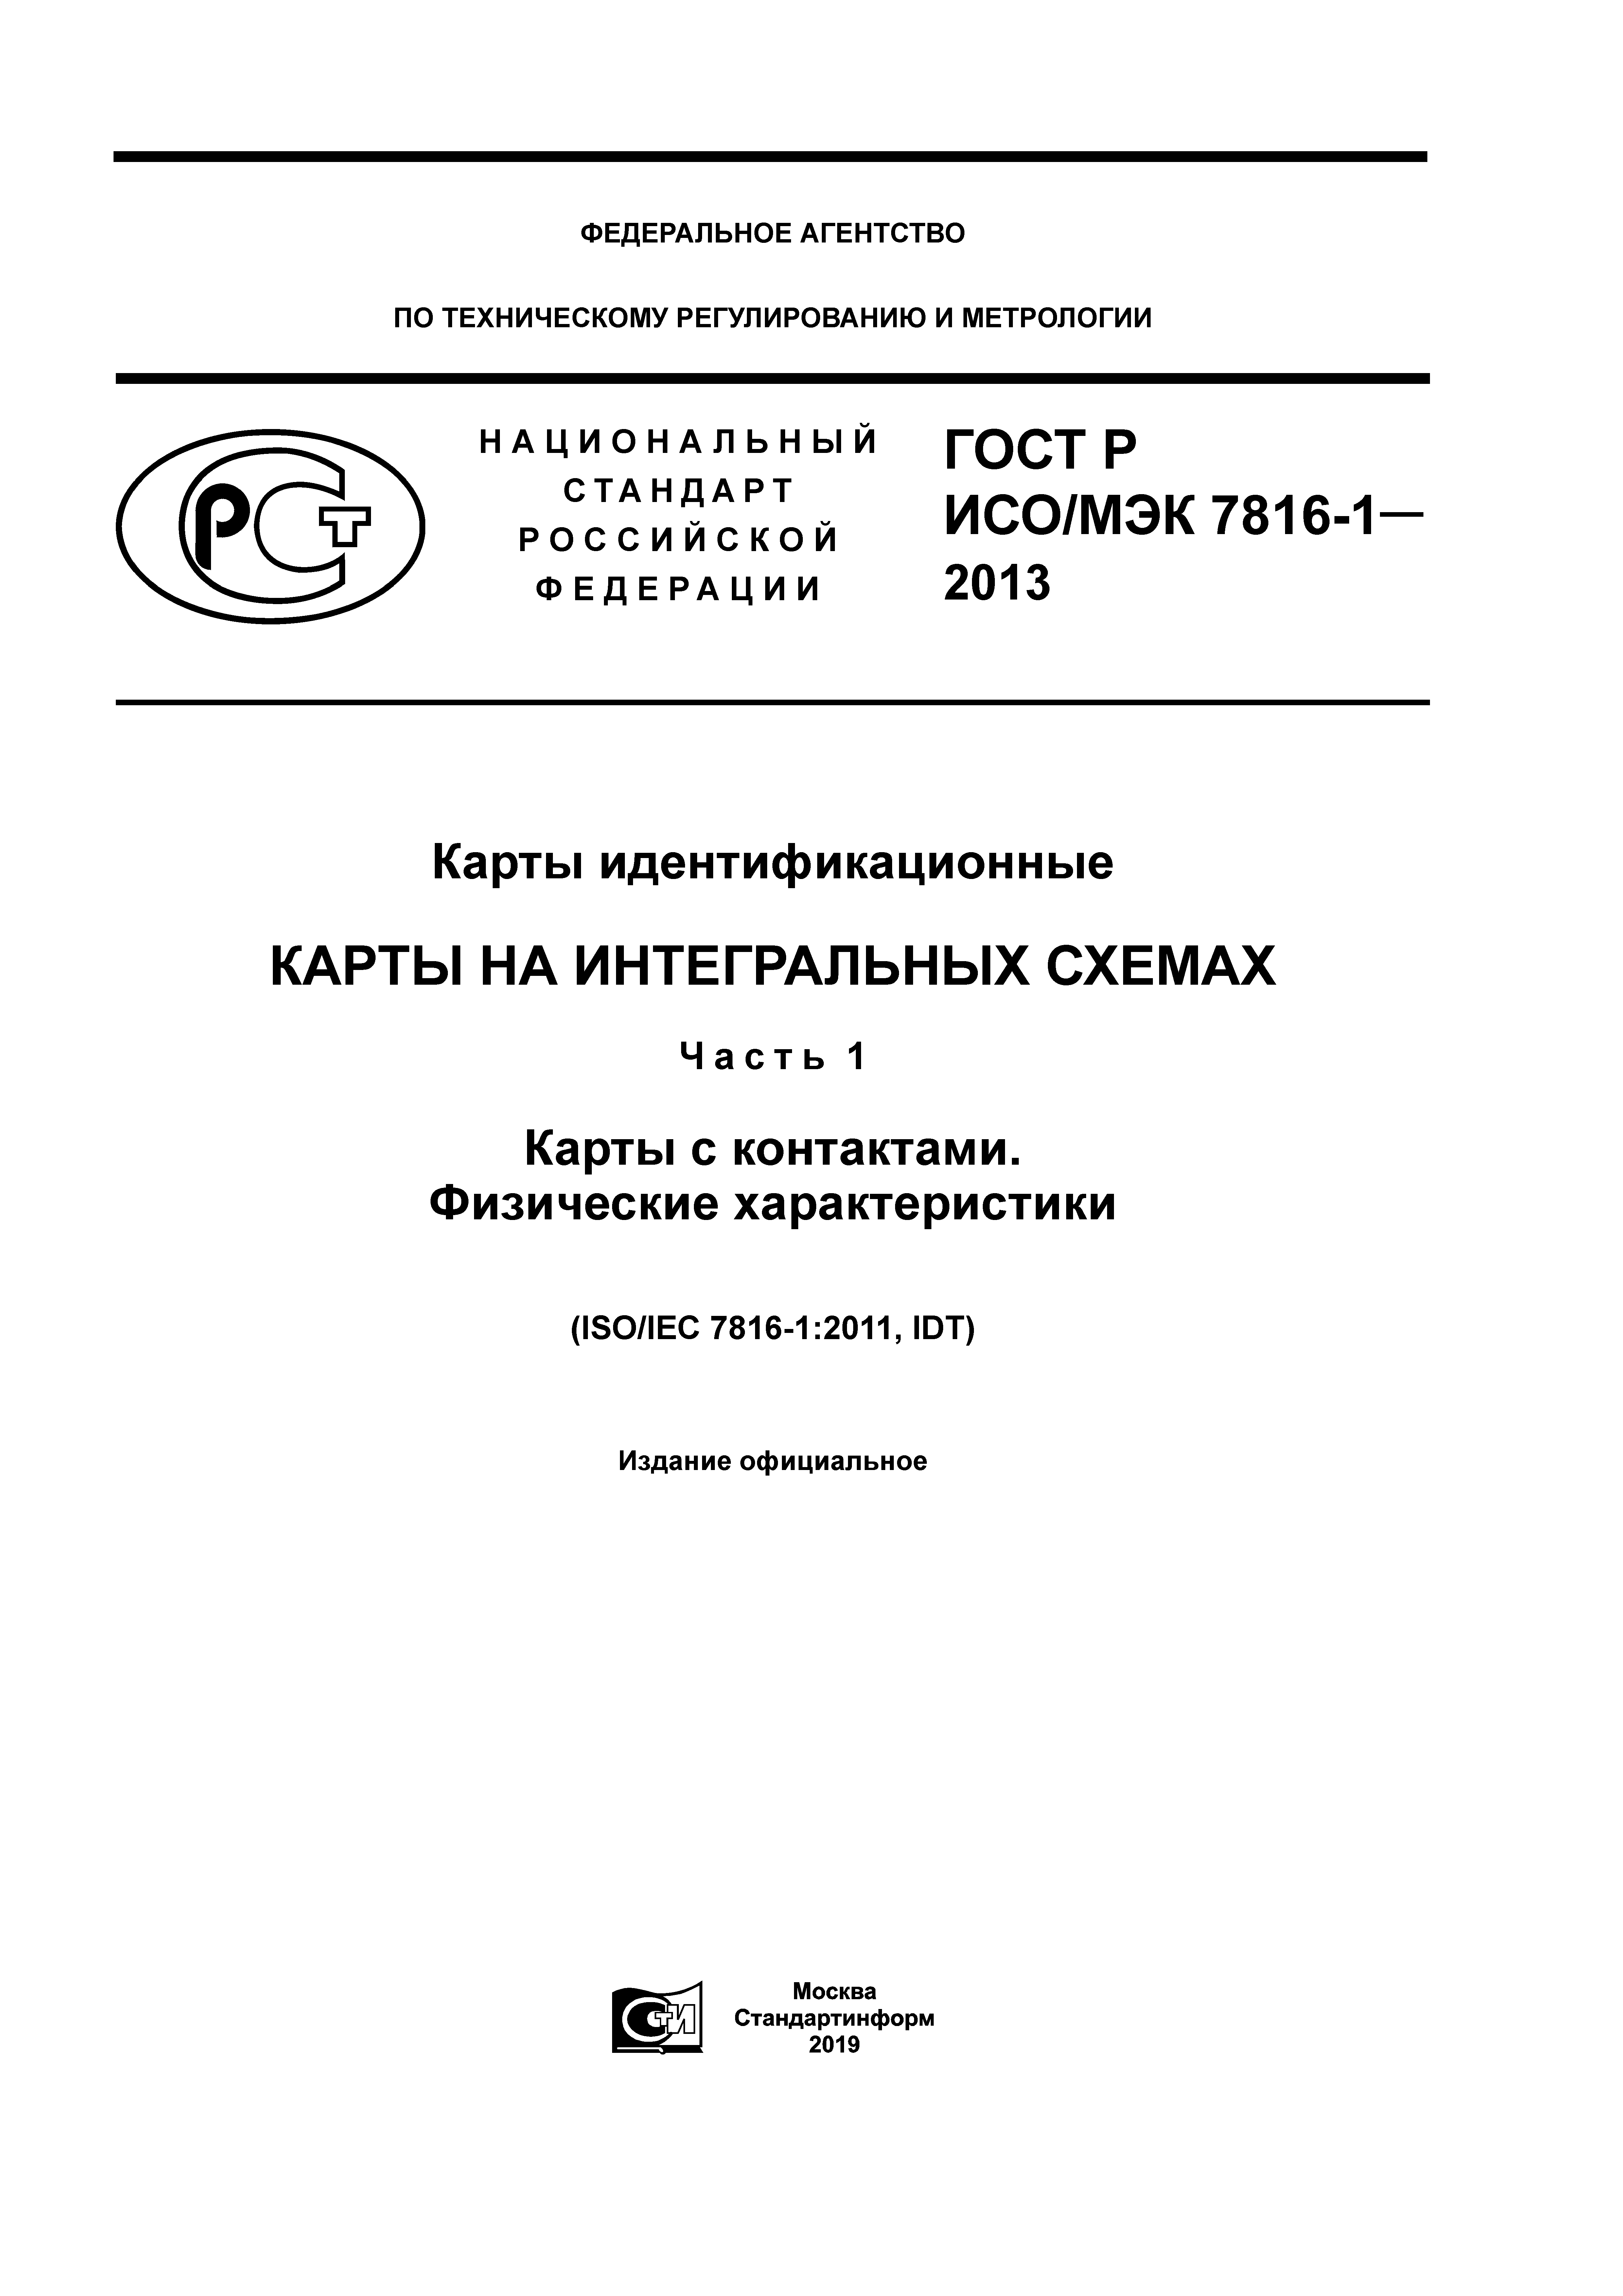 ГОСТ Р ИСО/МЭК 7816-1-2013